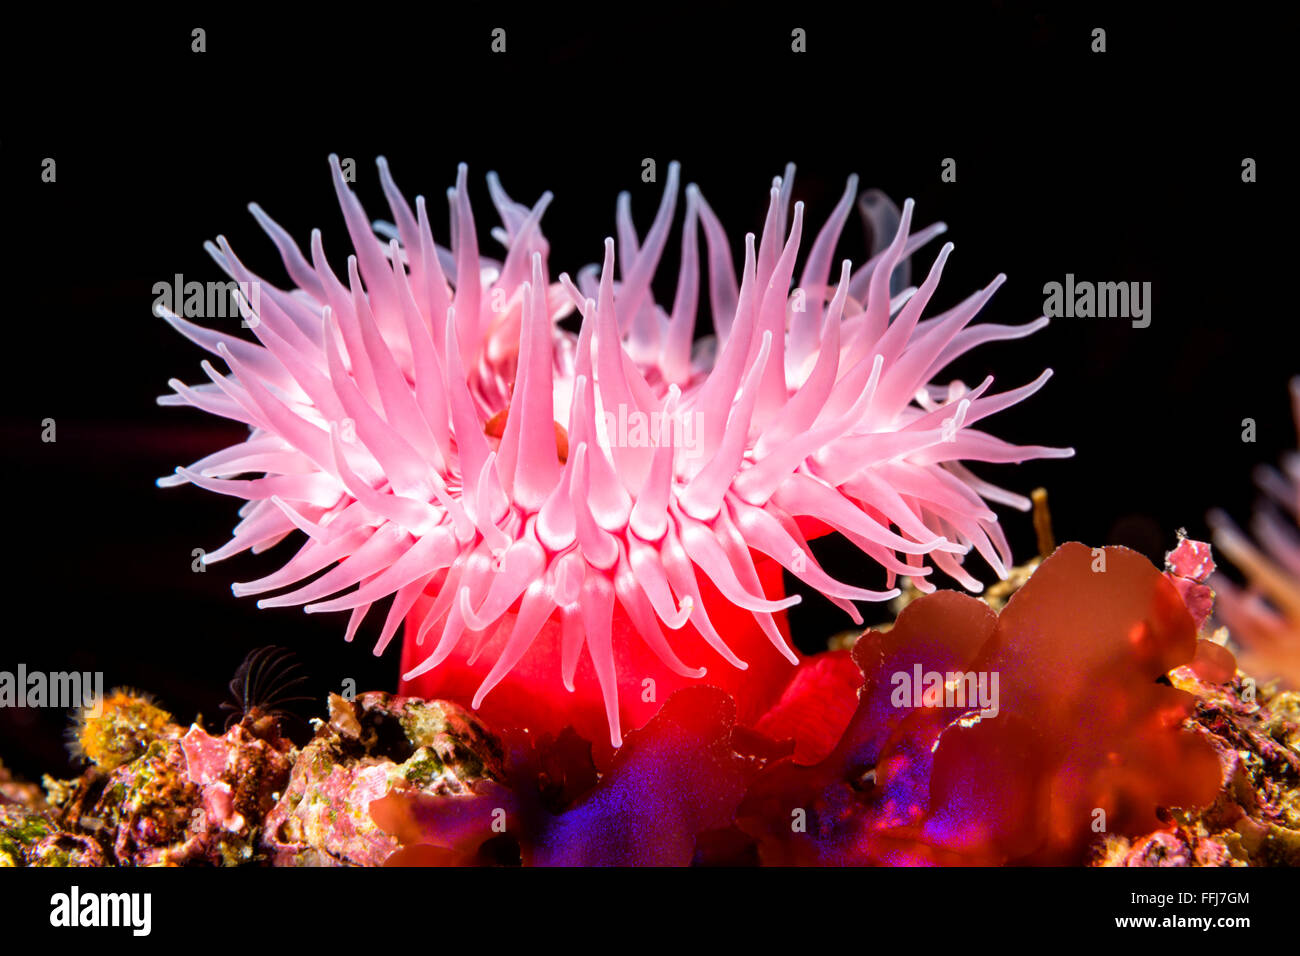 Una anémona de mar rojo conectado a un arrecife ha extendido sus tentáculos para atrapar la comida como el plancton microscópico drift por con el wate Foto de stock